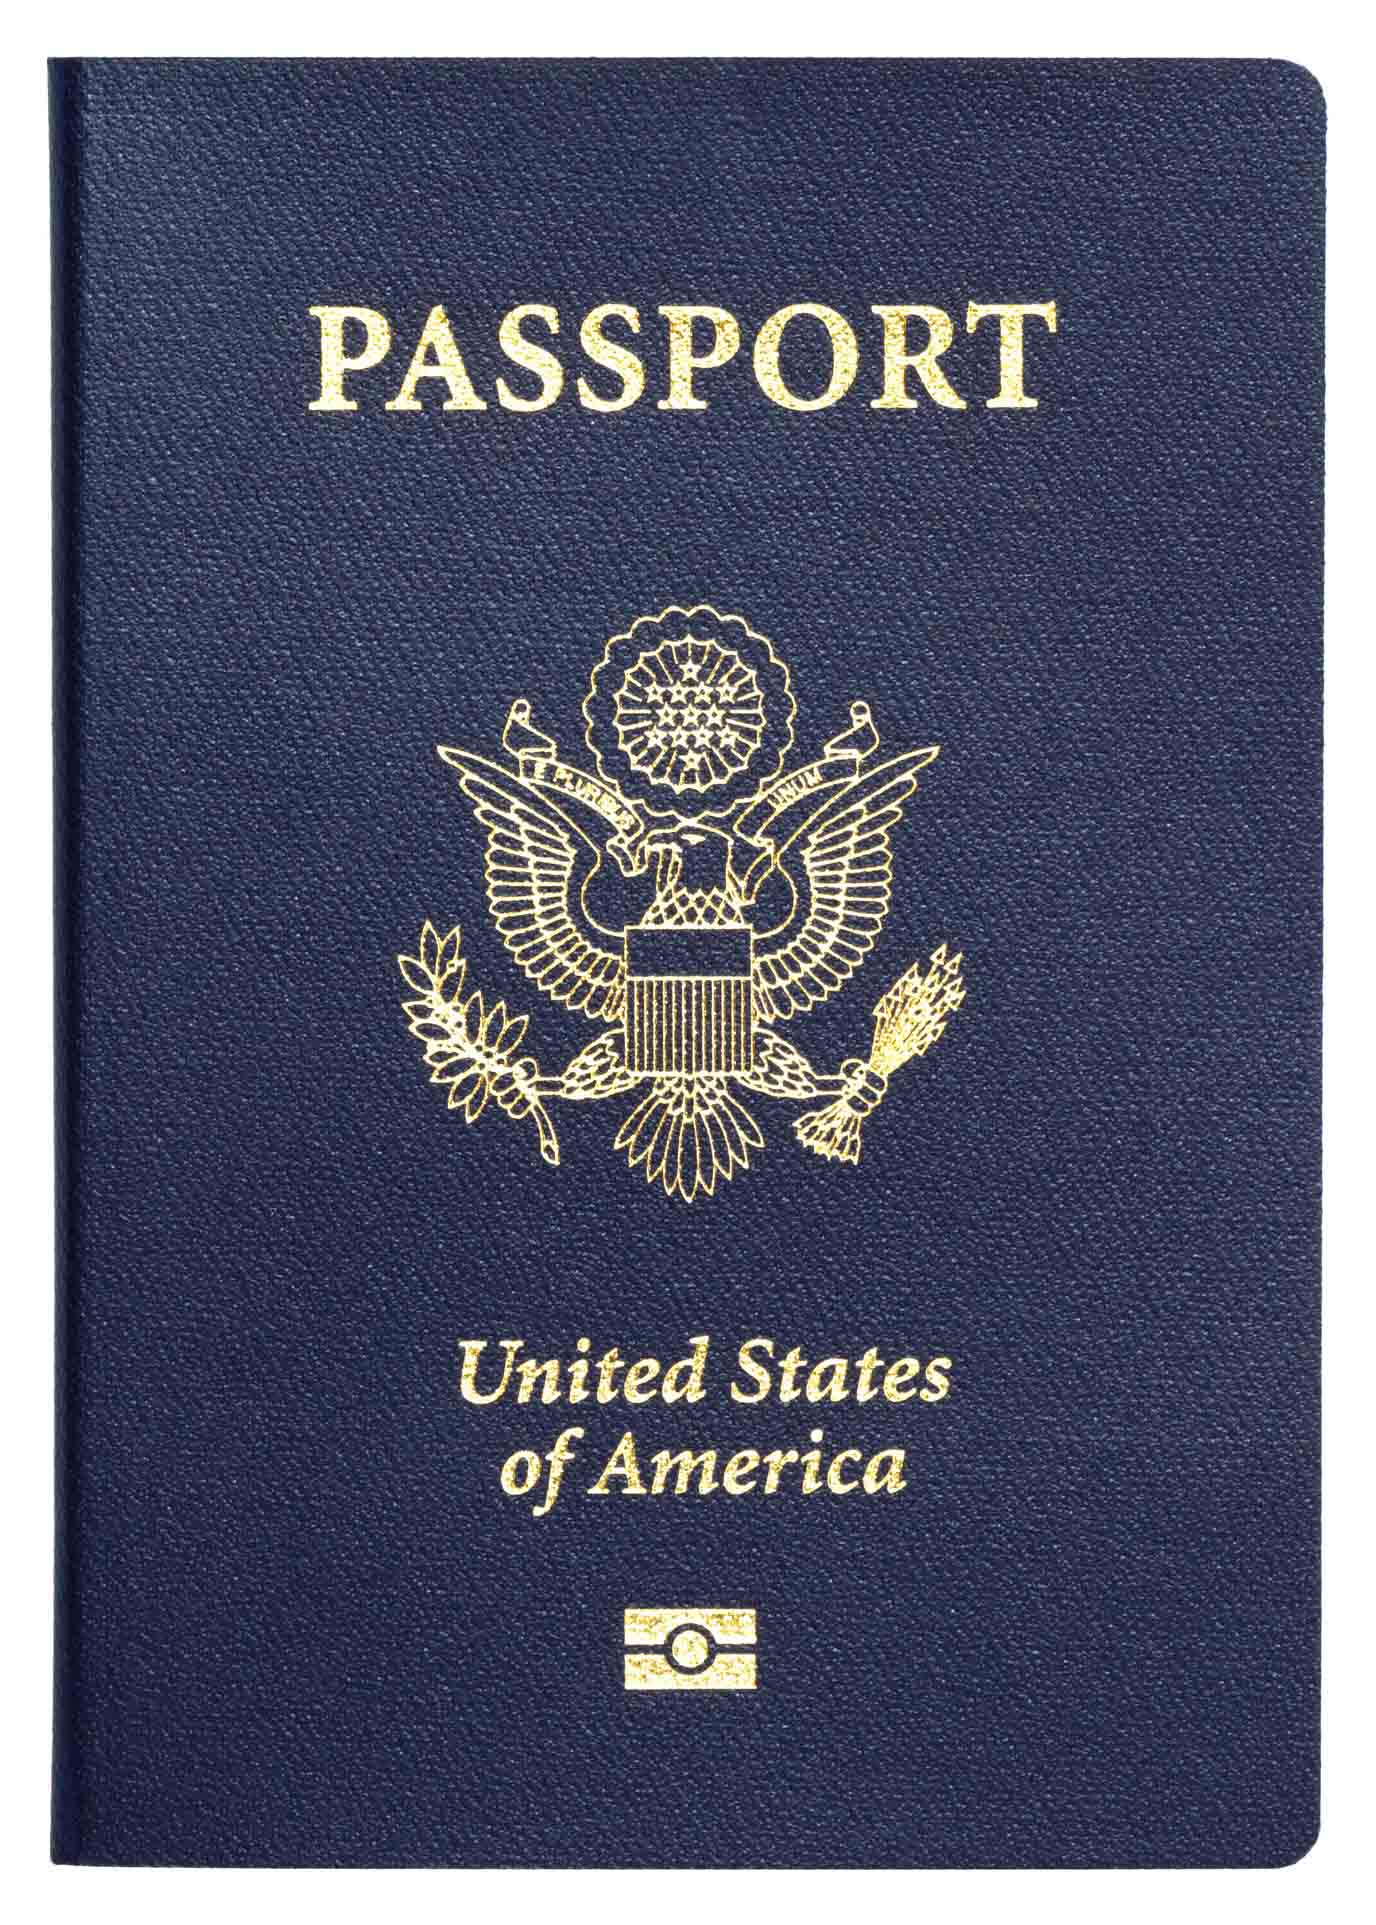 AdobeStock passport 2